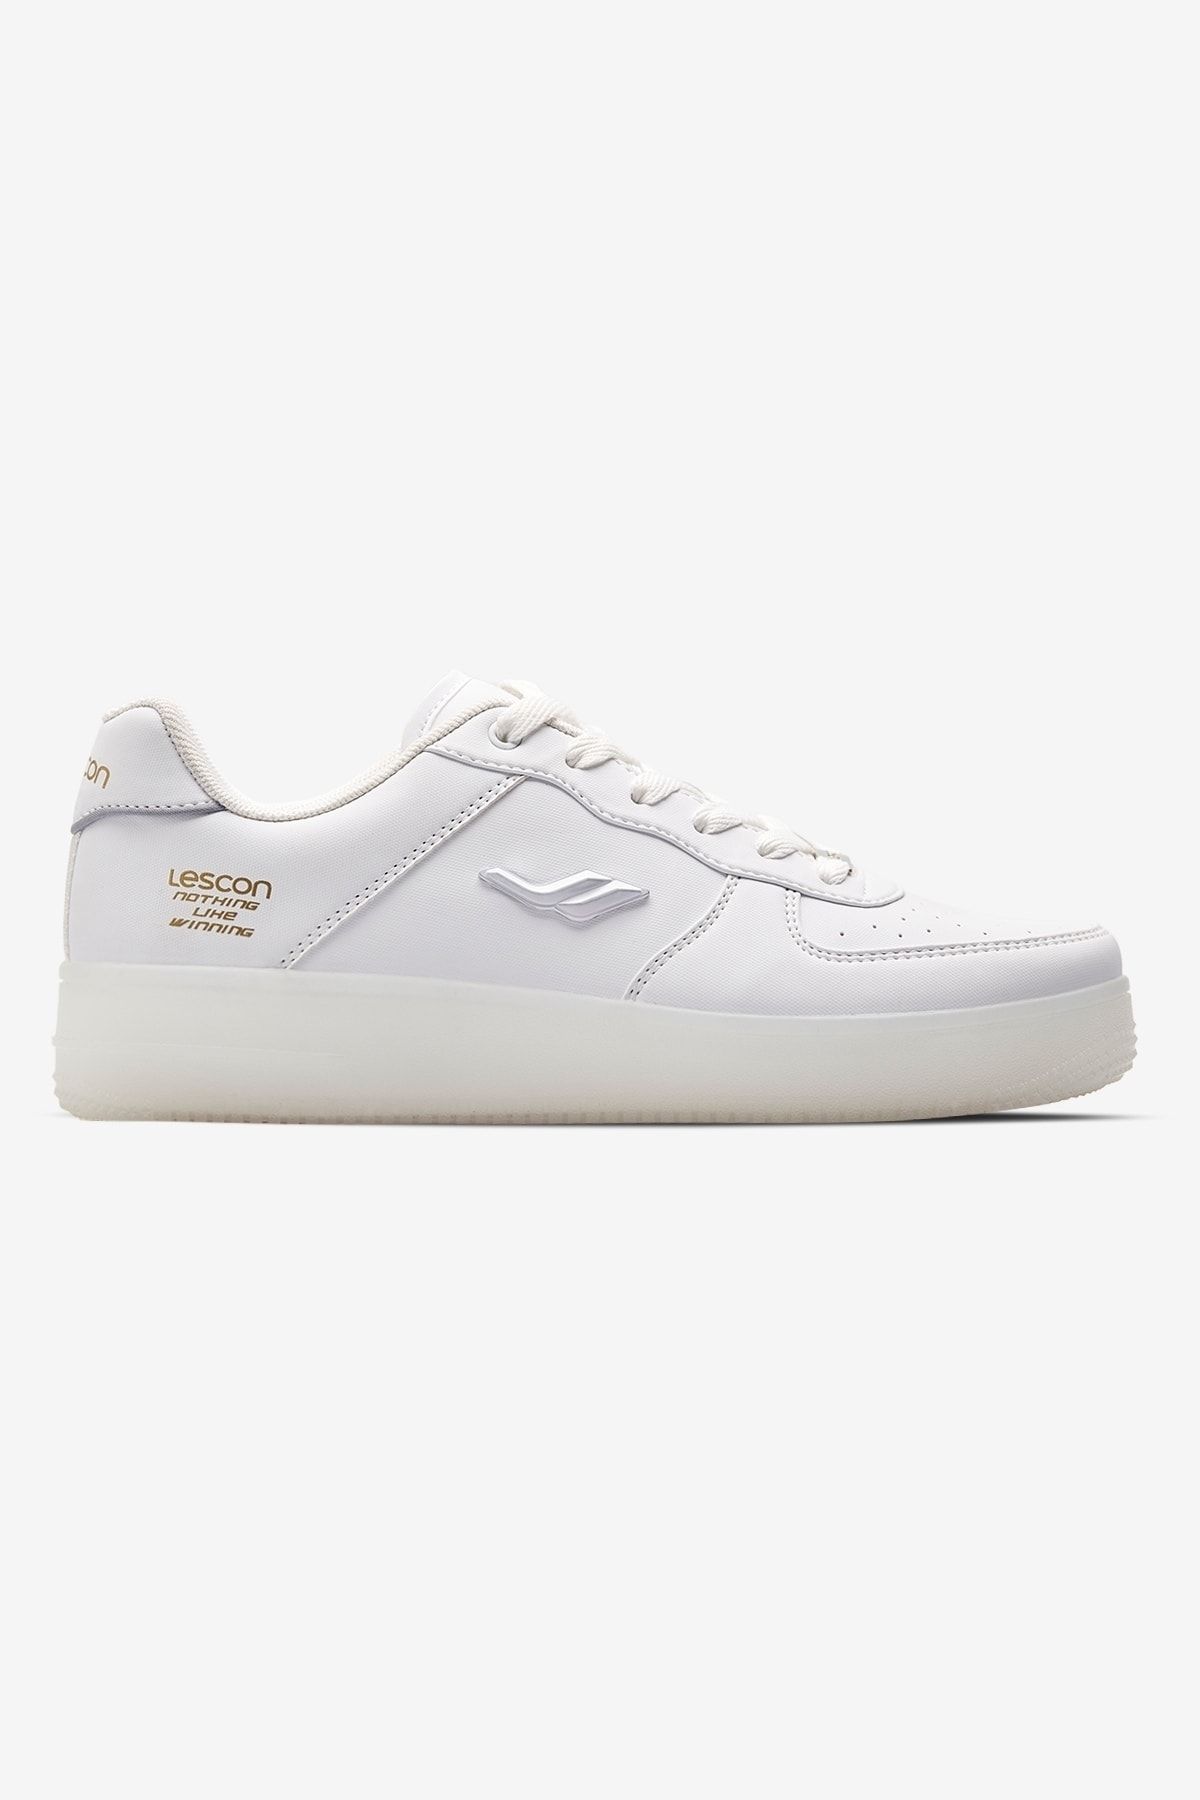 Lescon Zeplın 3 Beyaz Unisex Sneaker Spor Ayakkabı